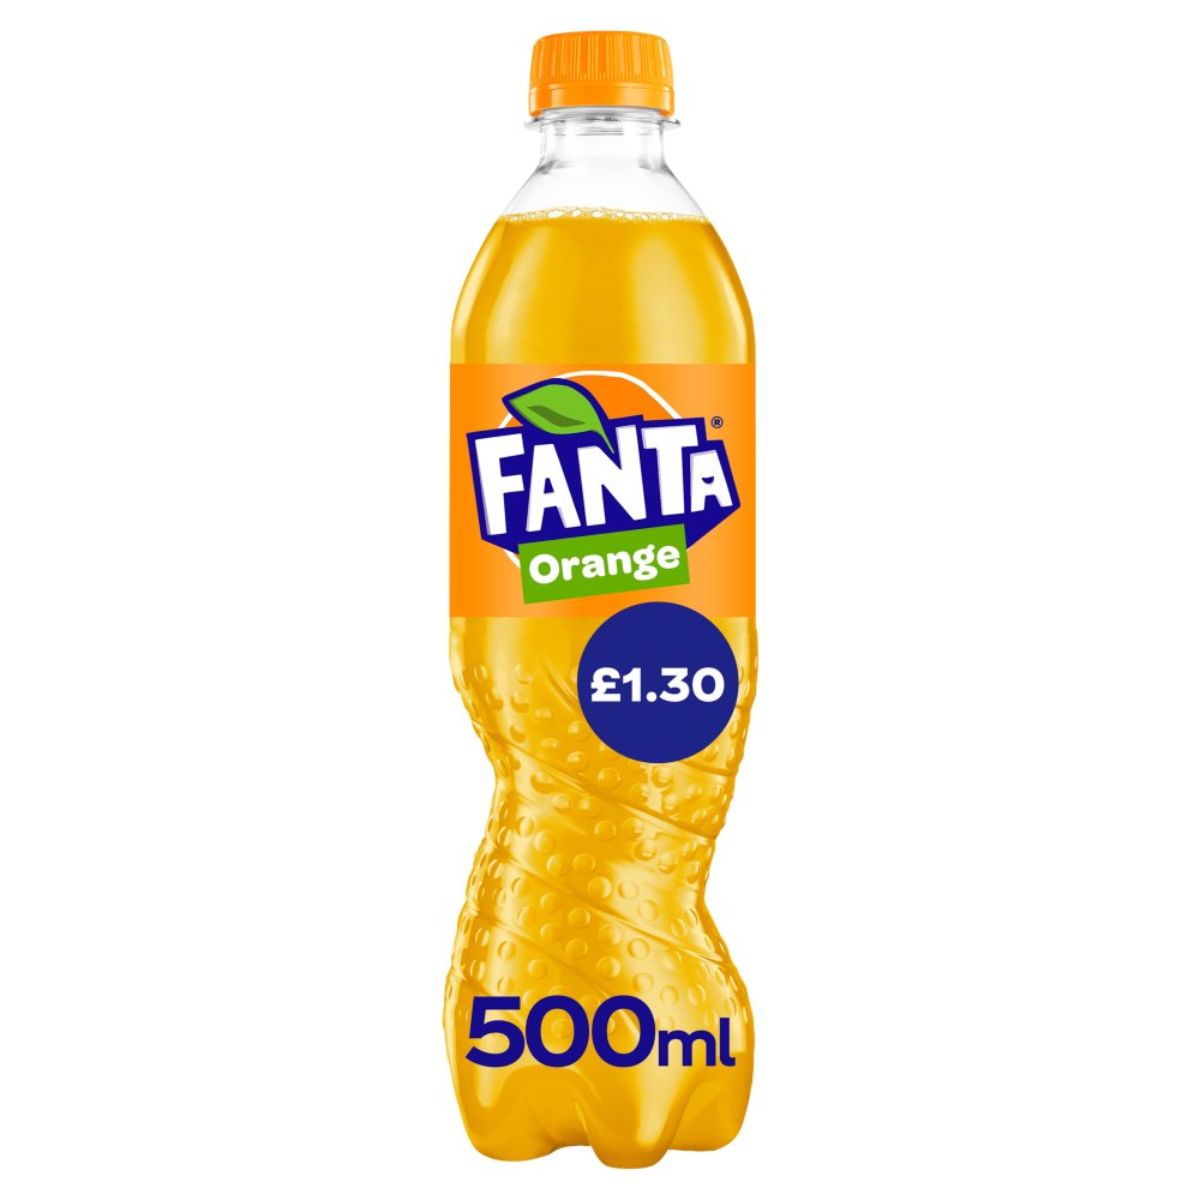 Fanta - Orange - 500ml.